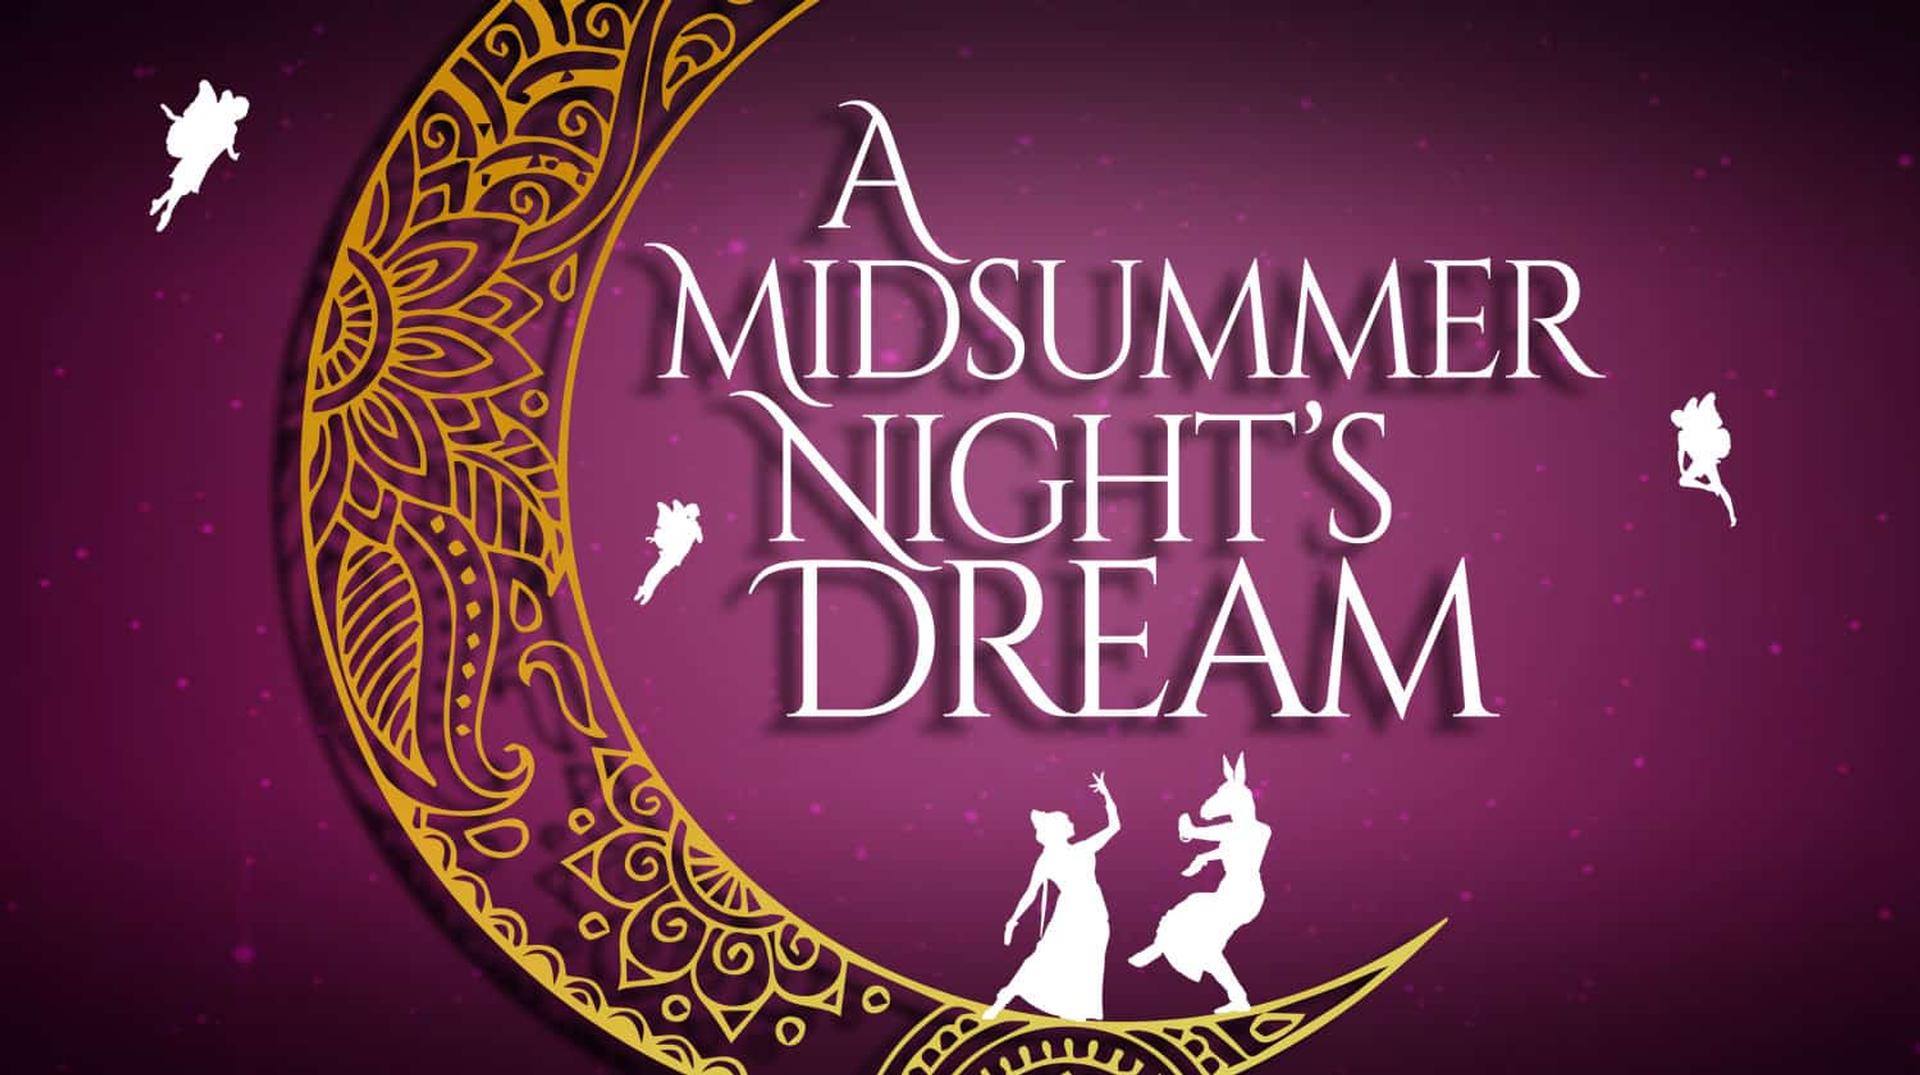 Stella Adler Presents: Midsummer Night's Dream